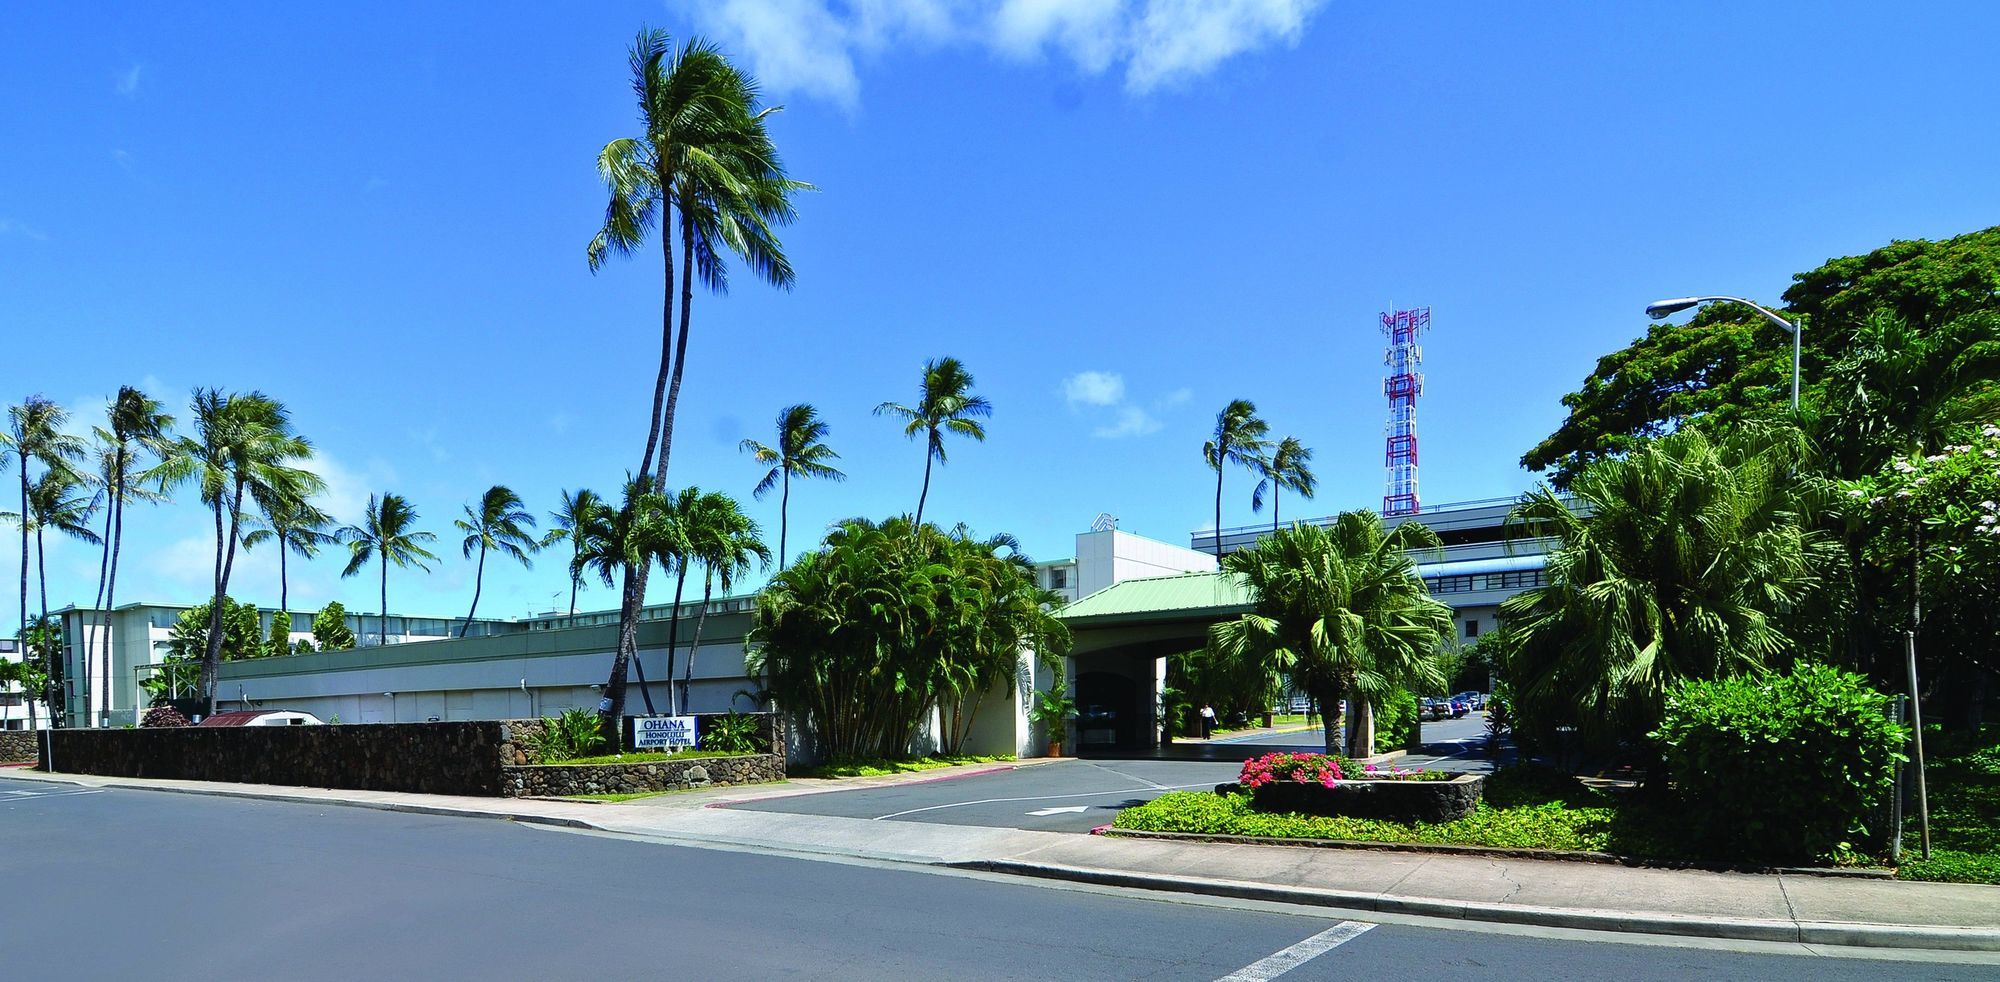 Airport Honolulu Hotel Экстерьер фото